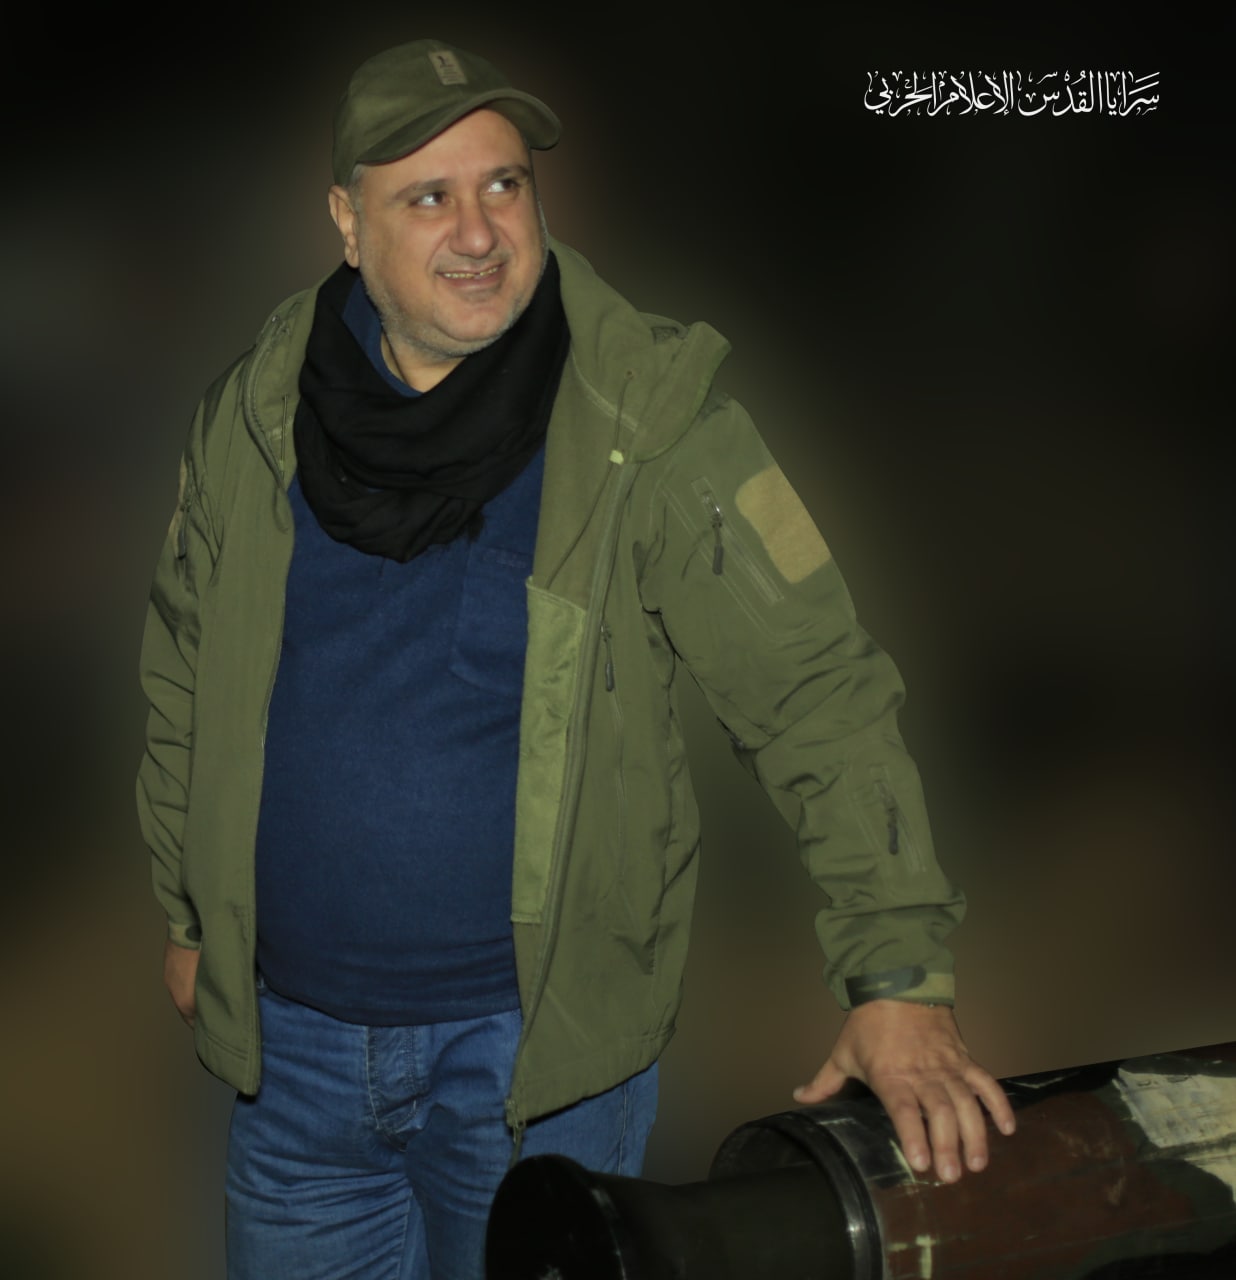 صور قائد المنطقة الشمالية في سرايا القدس الشهيد القائد تيسير الجعبري "أبو محمود" 